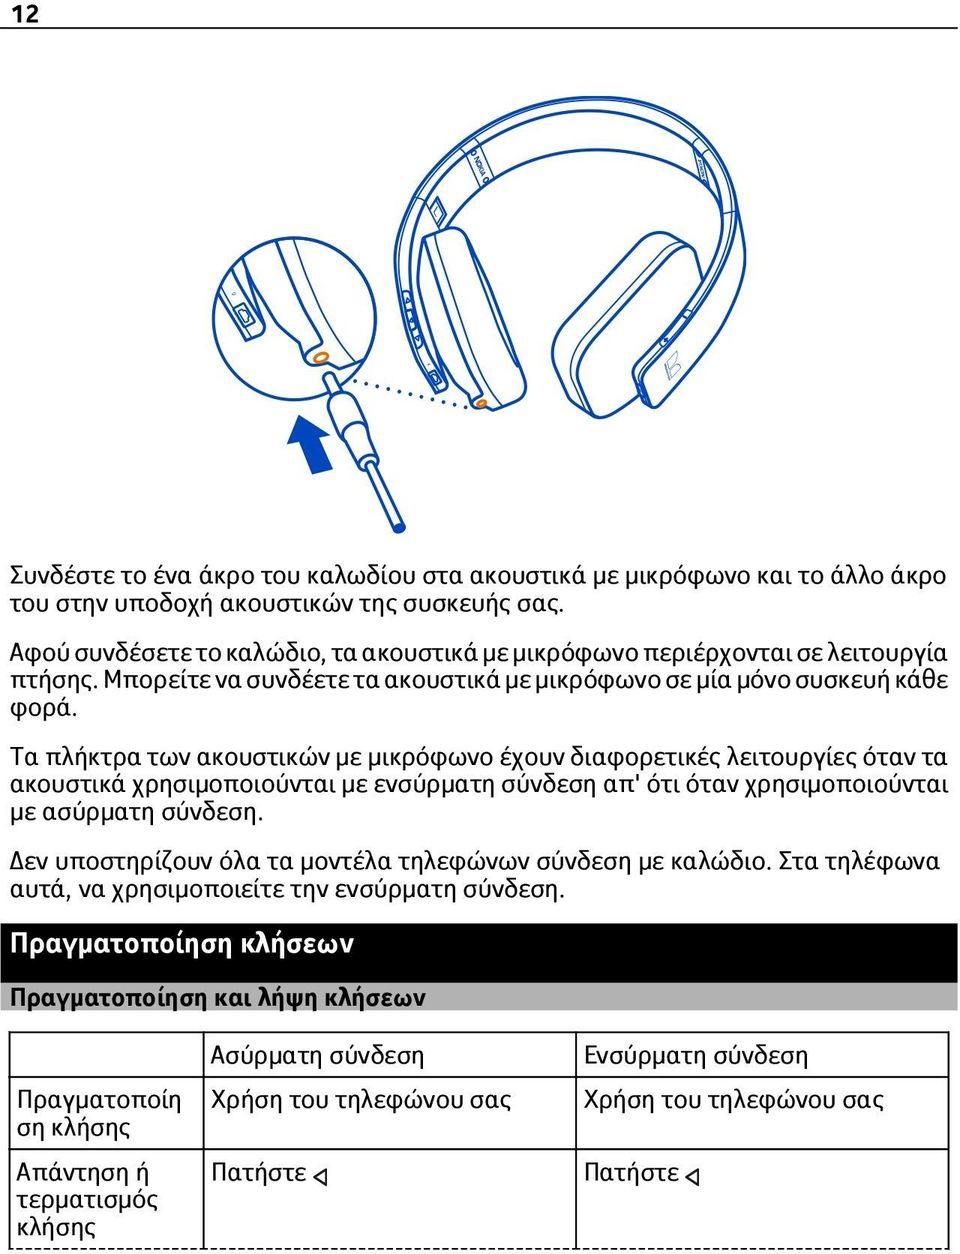 Τα πλήκτρα των ακουστικών με μικρόφωνο έχουν διαφορετικές λειτουργίες όταν τα ακουστικά χρησιμοποιούνται με ενσύρματη σύνδεση απ' ότι όταν χρησιμοποιούνται με ασύρματη σύνδεση.